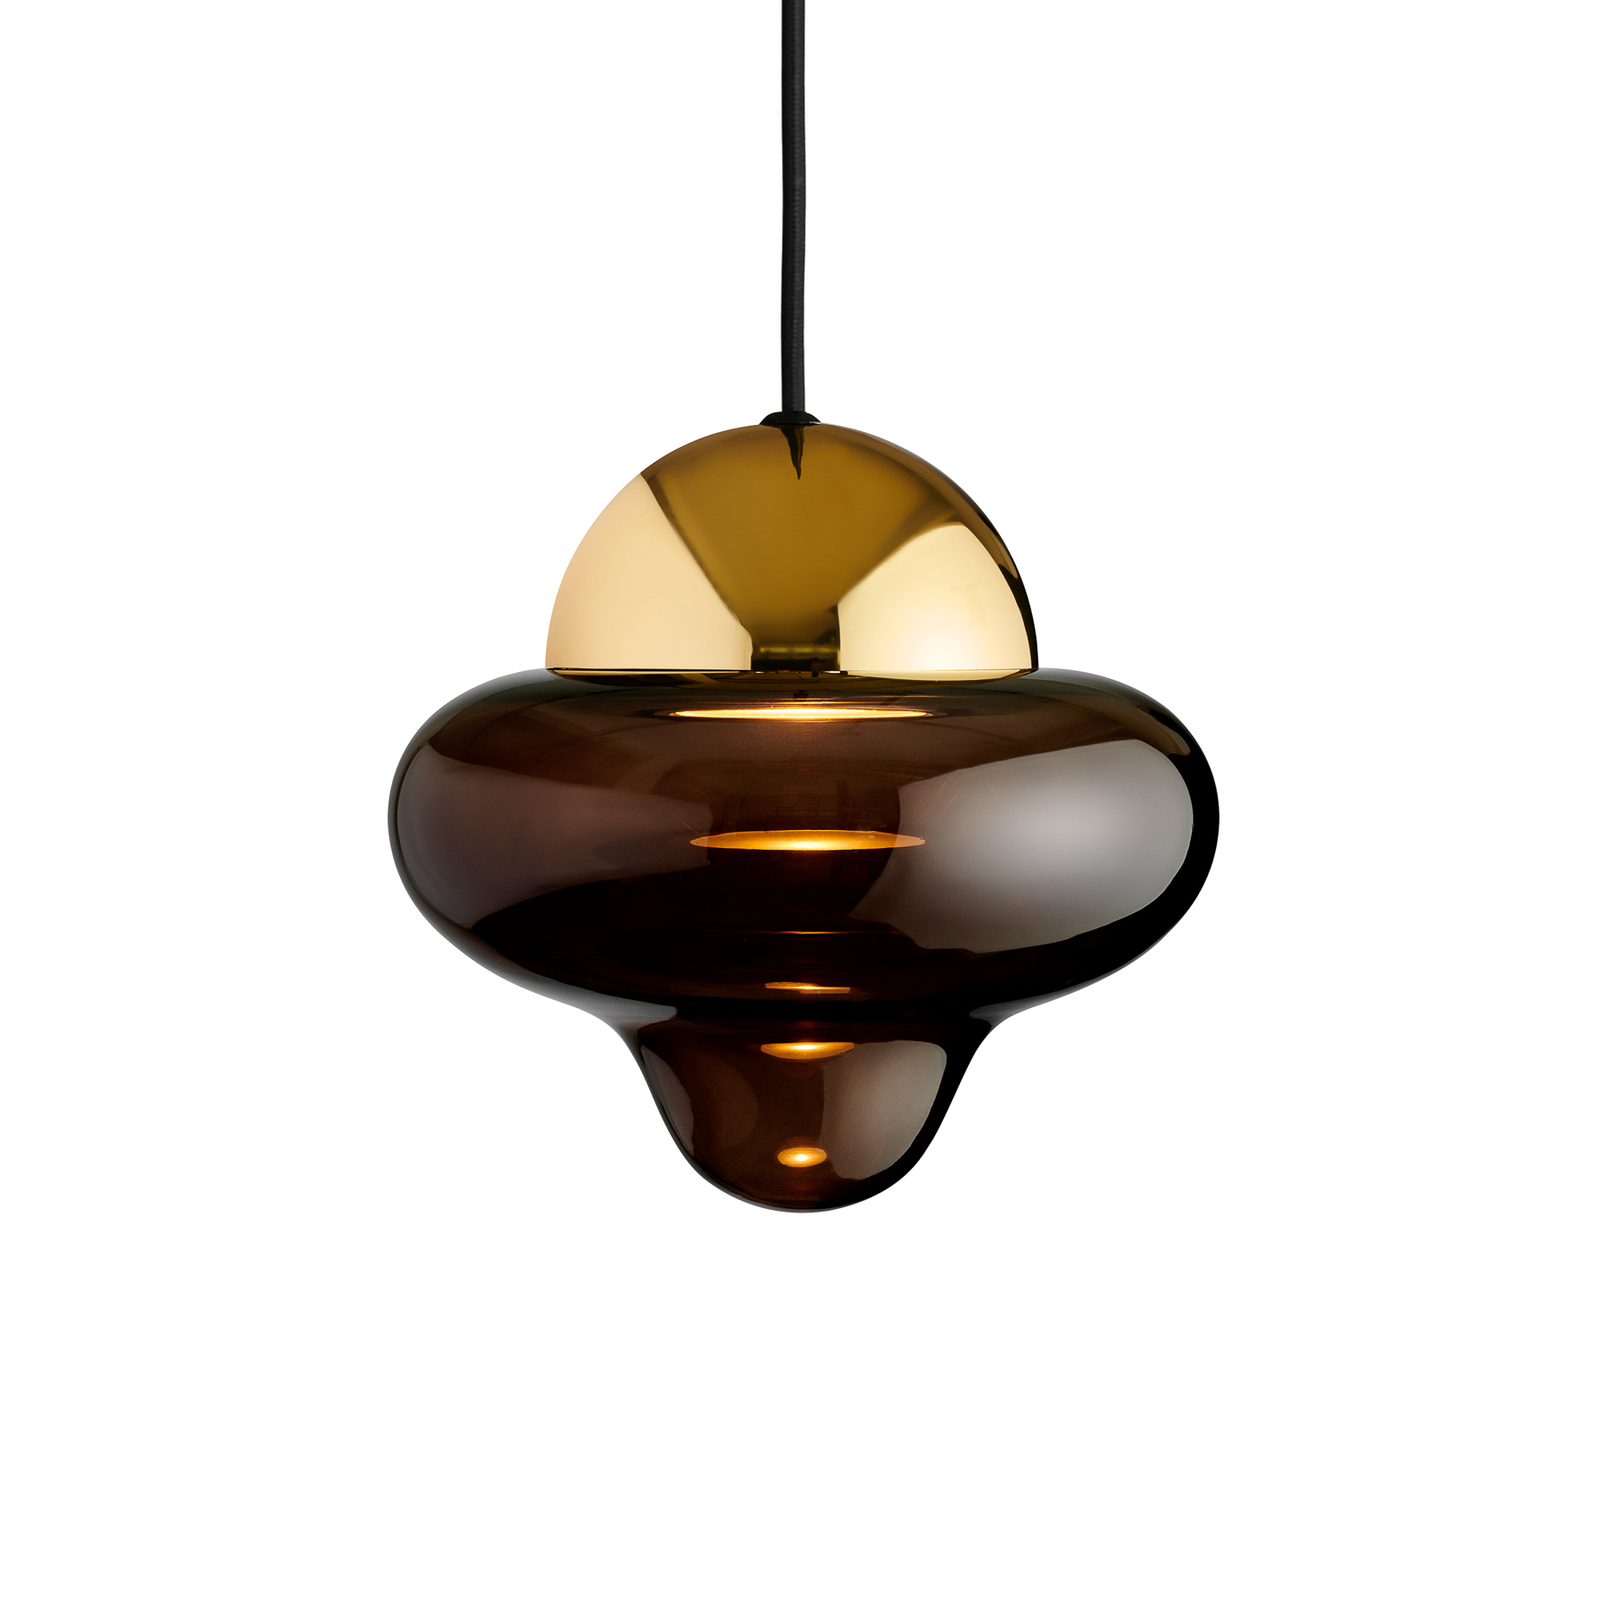 Nootachtige hanglamp, bruin/goudkleurig, Ø 18,5 cm, glas